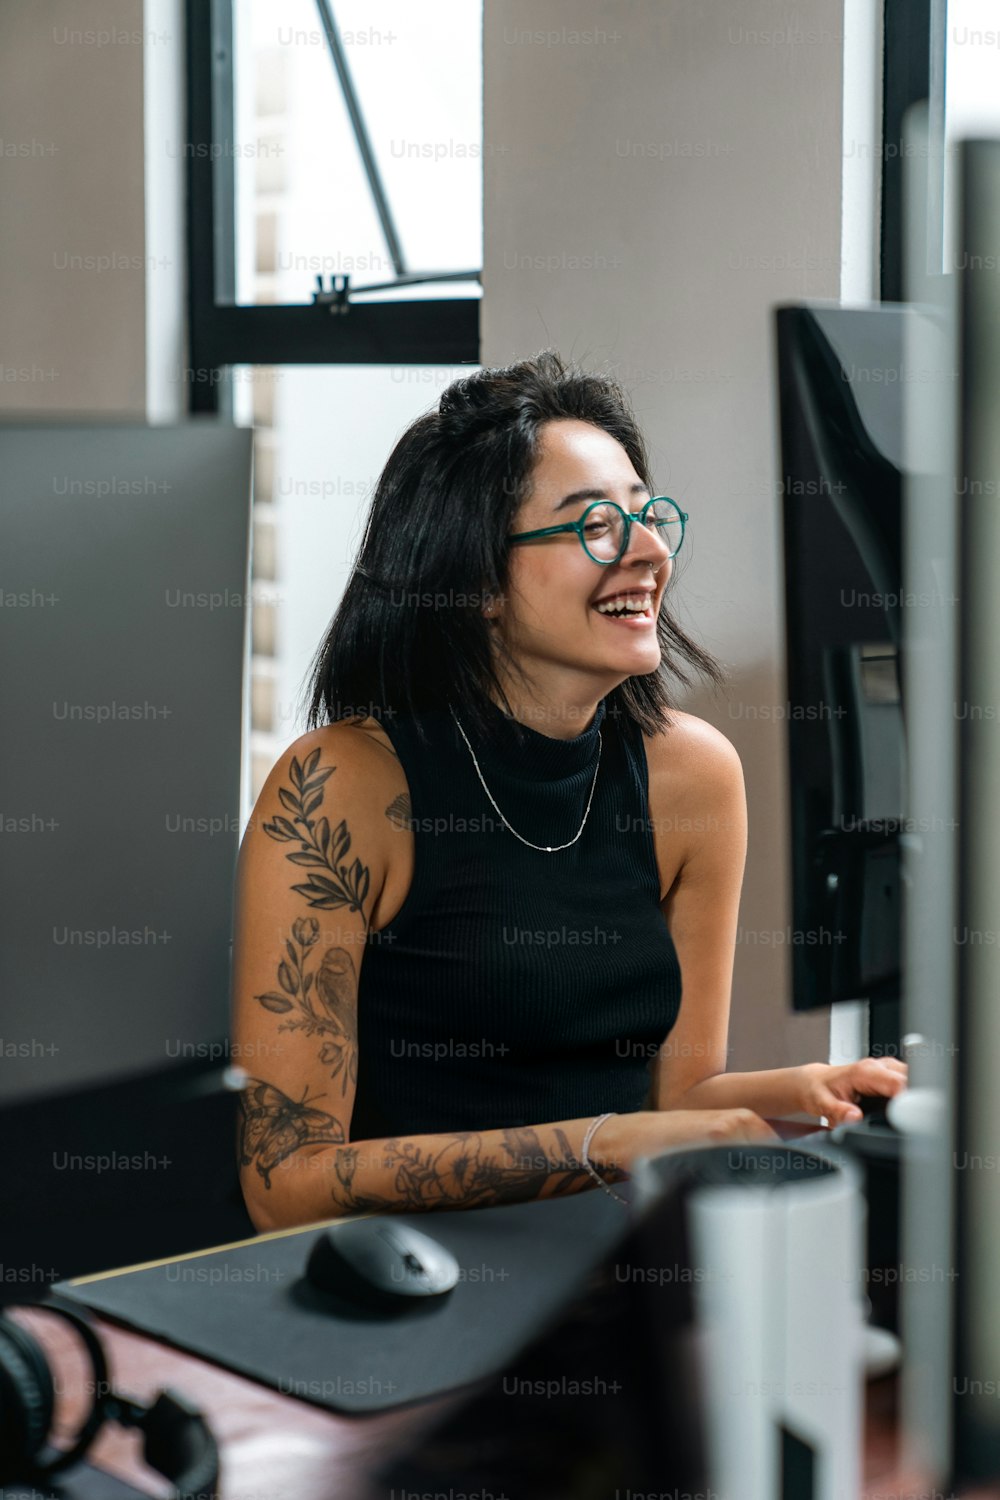 Una donna con un tatuaggio sul braccio seduta davanti a un computer